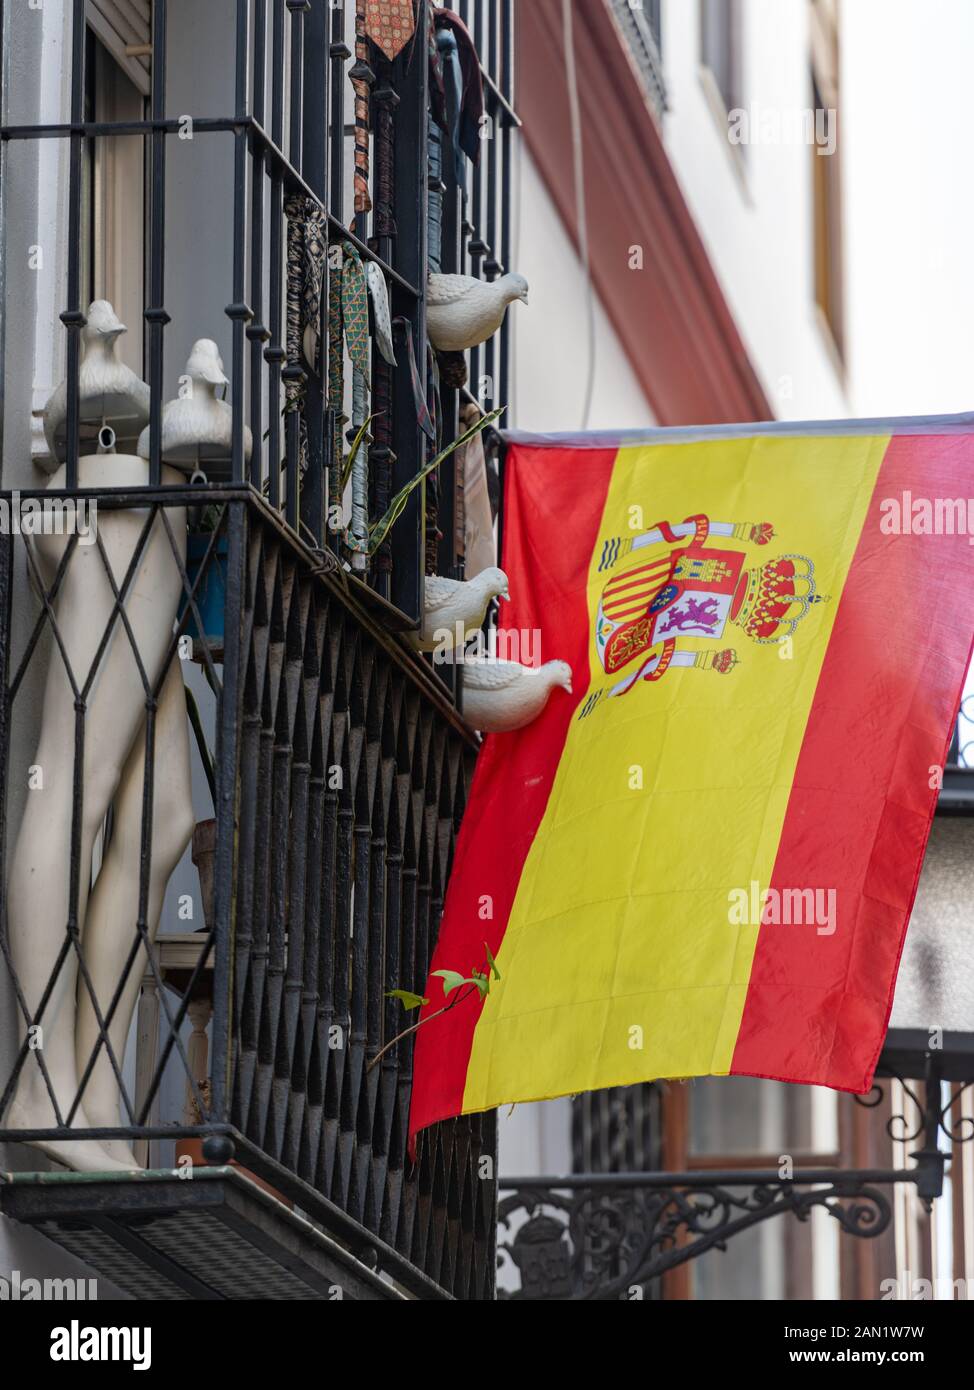 Una collezione di piccioni colati si affaccia su una bandiera spagnola appesa a un tradizionale balcone in ferro battuto di Siviglia con gambe e cravatte da uomo manichino. Foto Stock